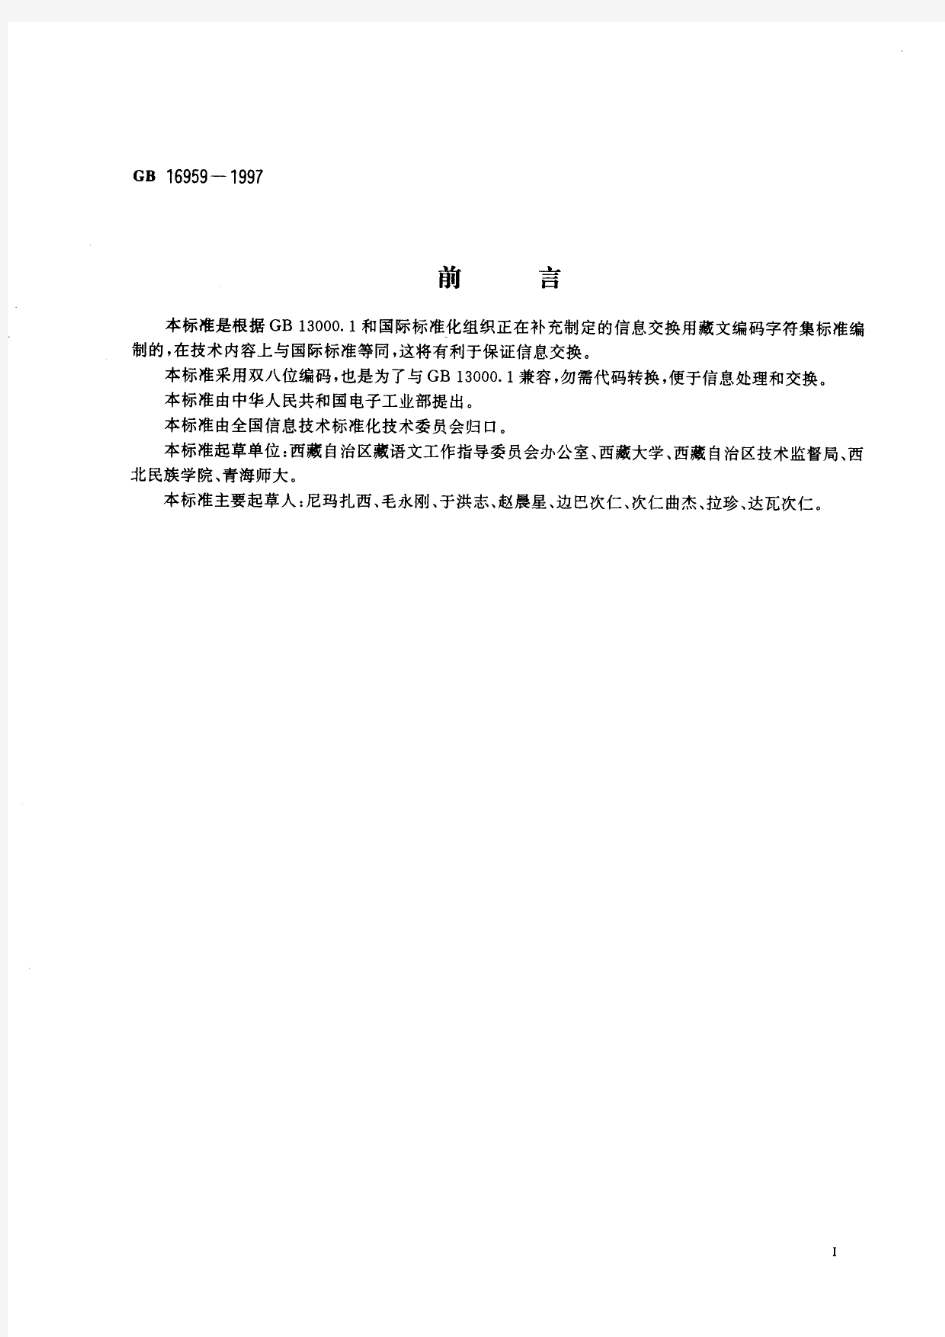 信息技术 信息交换用藏文编码字符集 基本集(标准状态：现行)